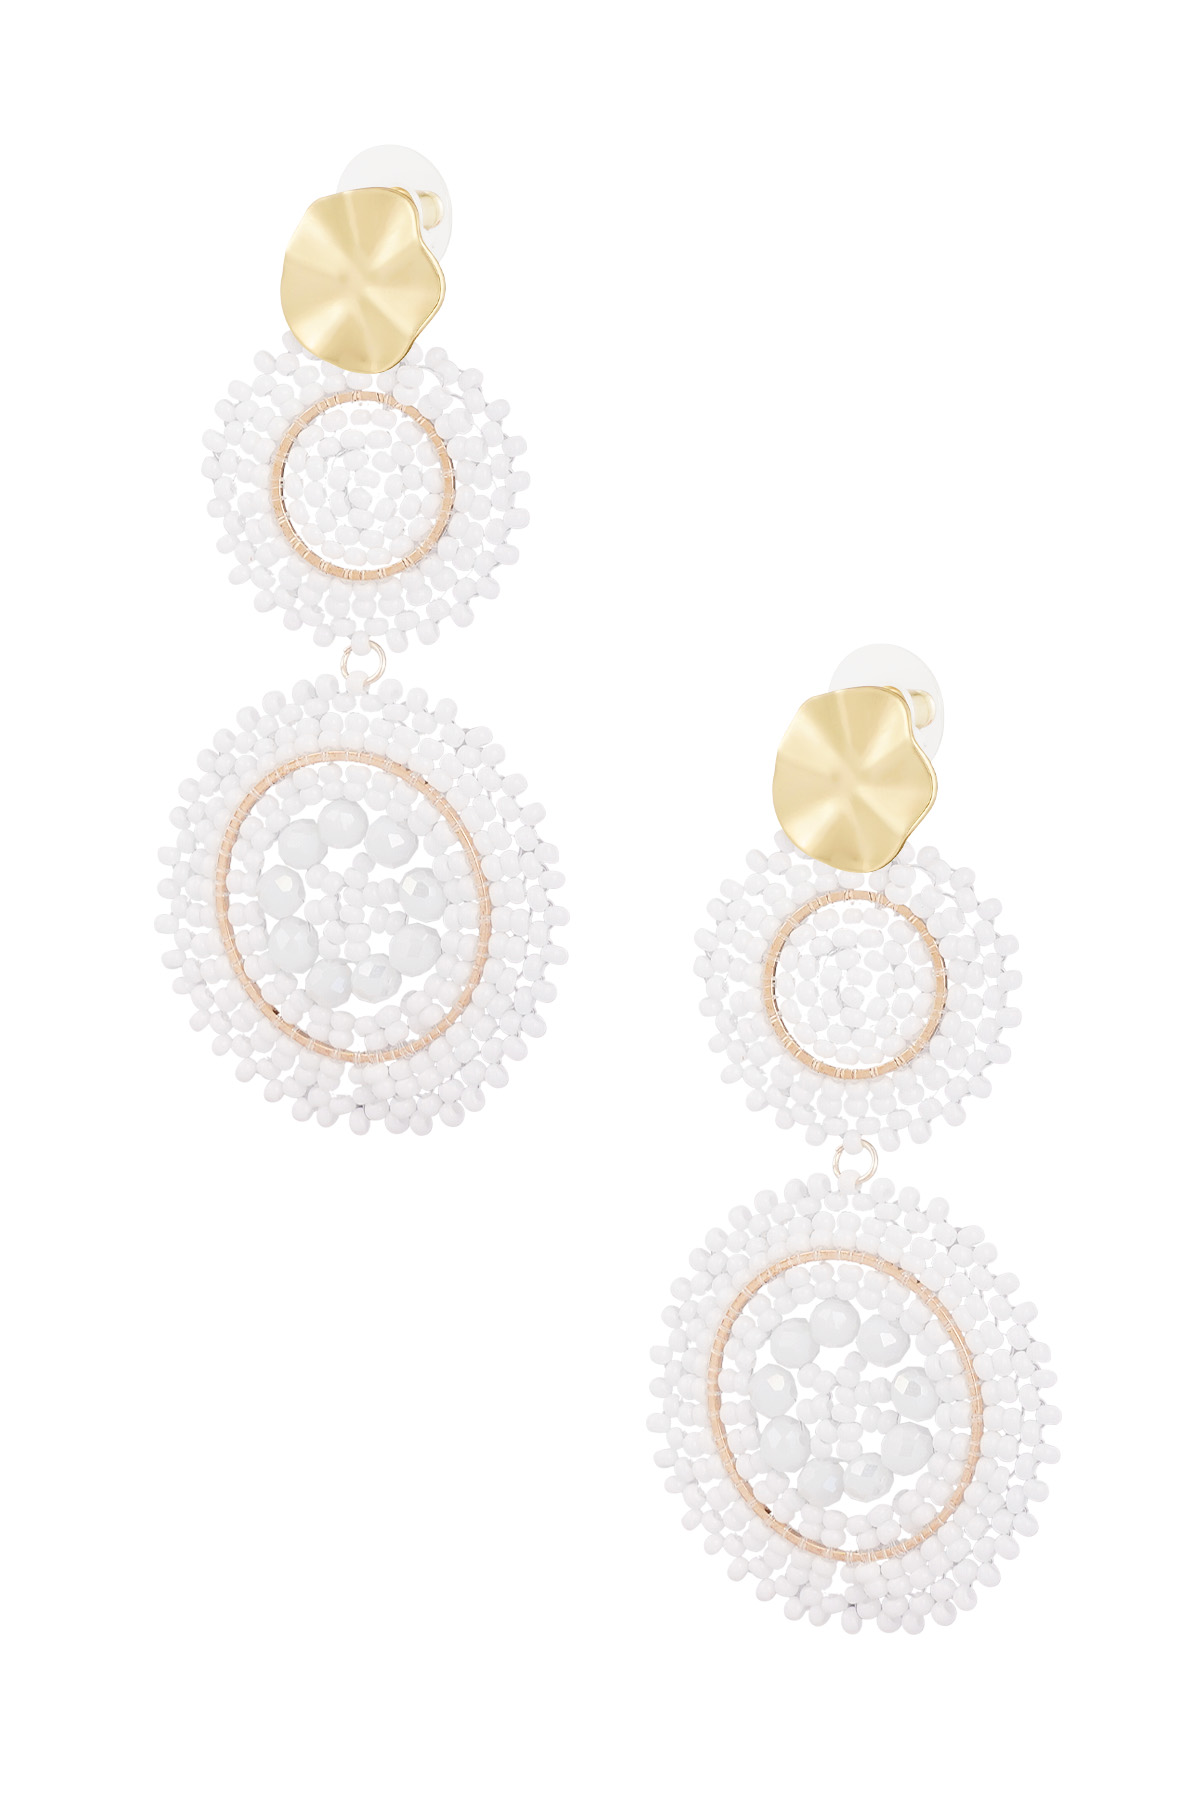 Earrings sunflower glass - white gold 